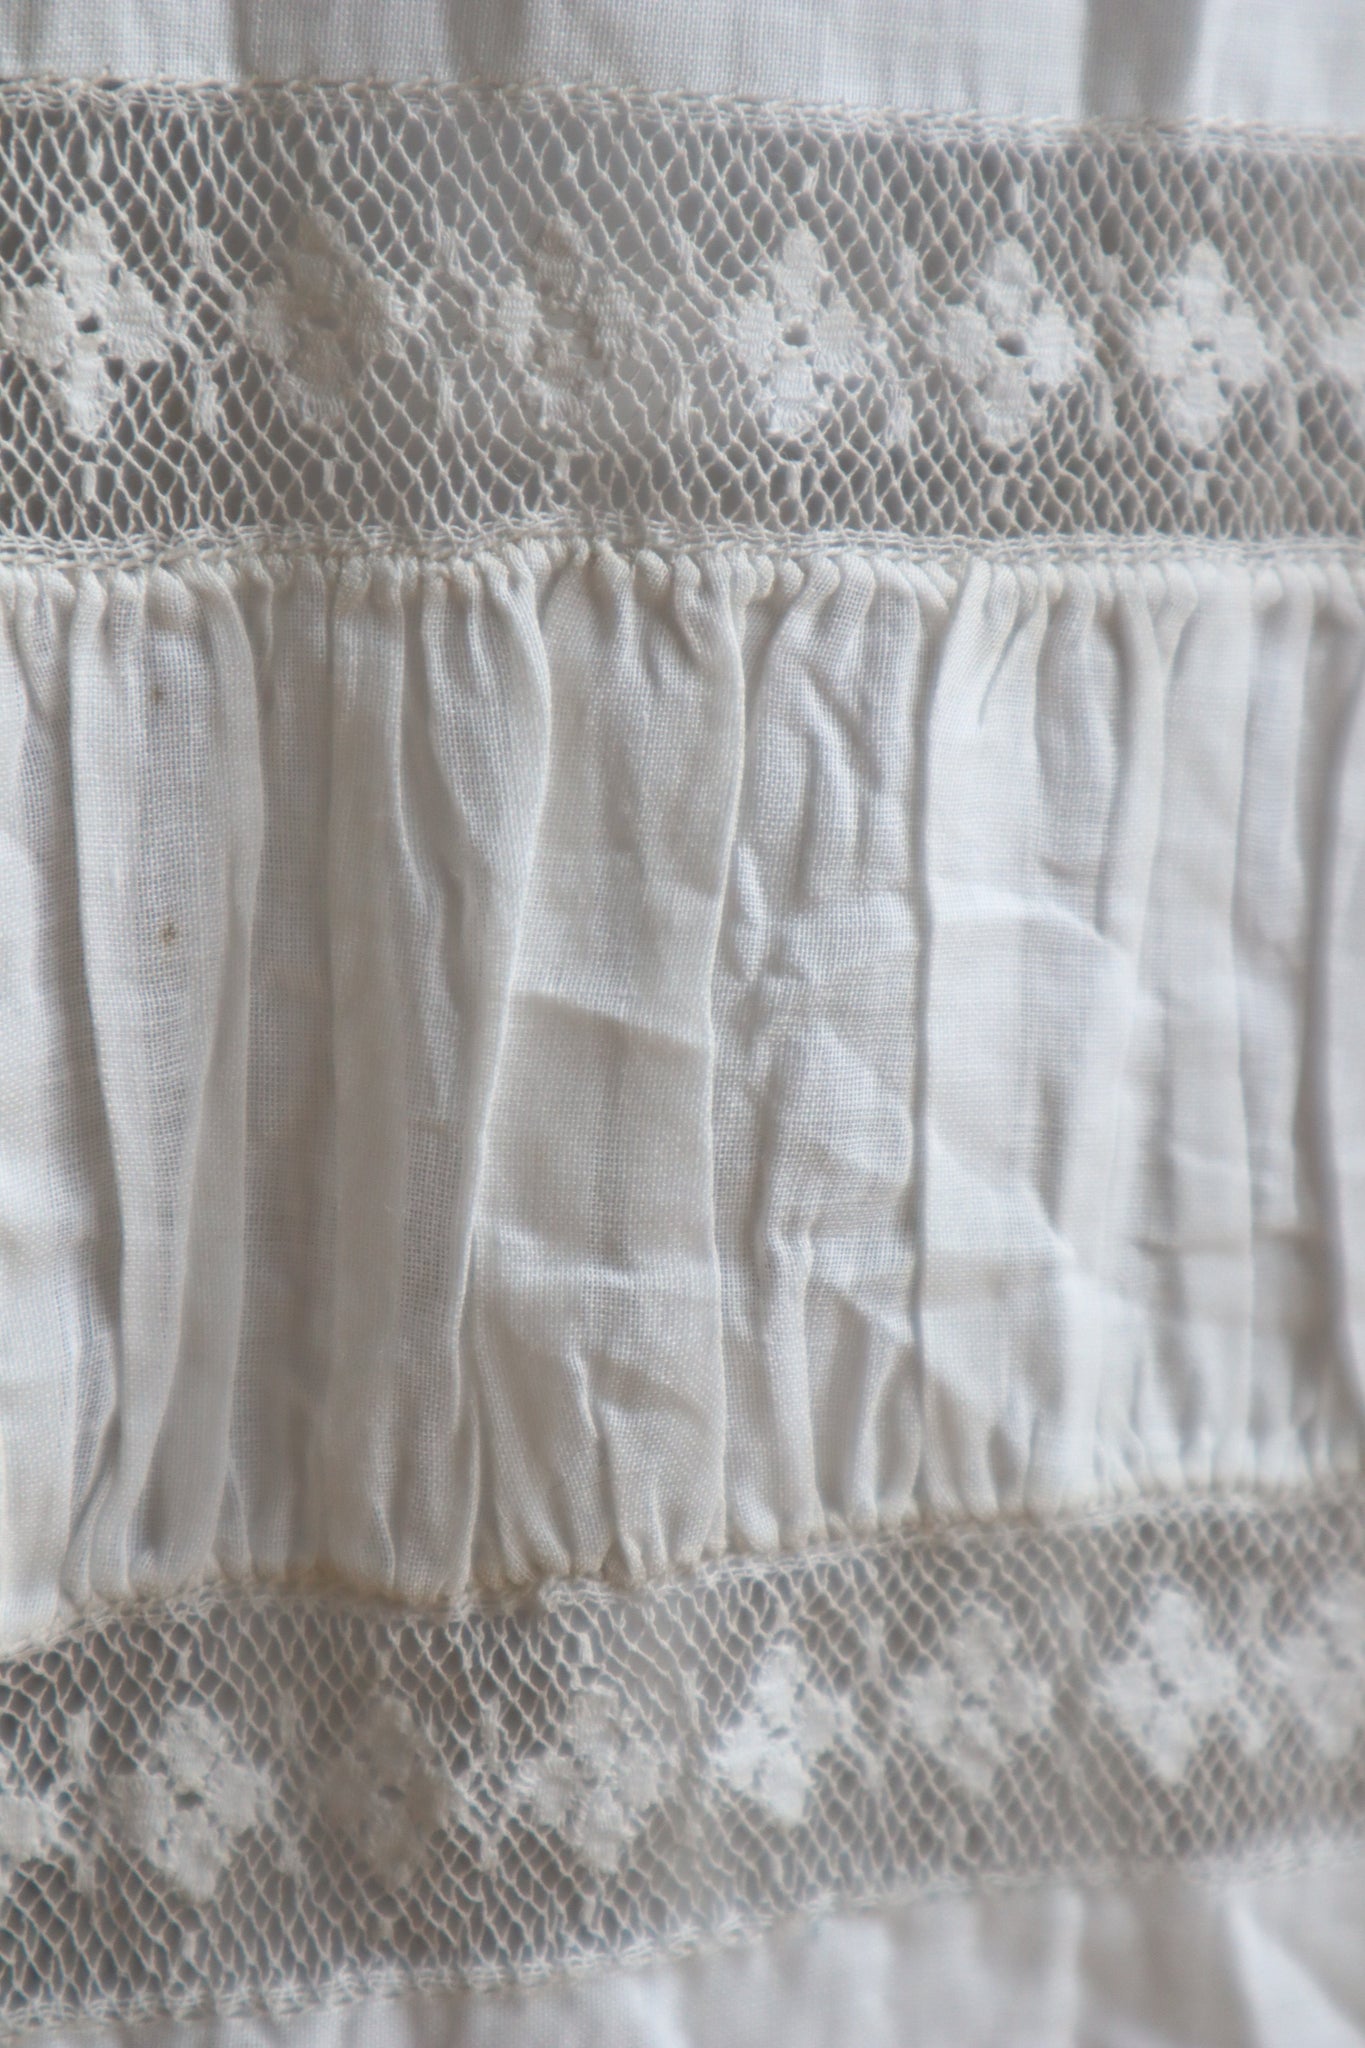 1890s~1900s Sheer Linen Cotton Skirt